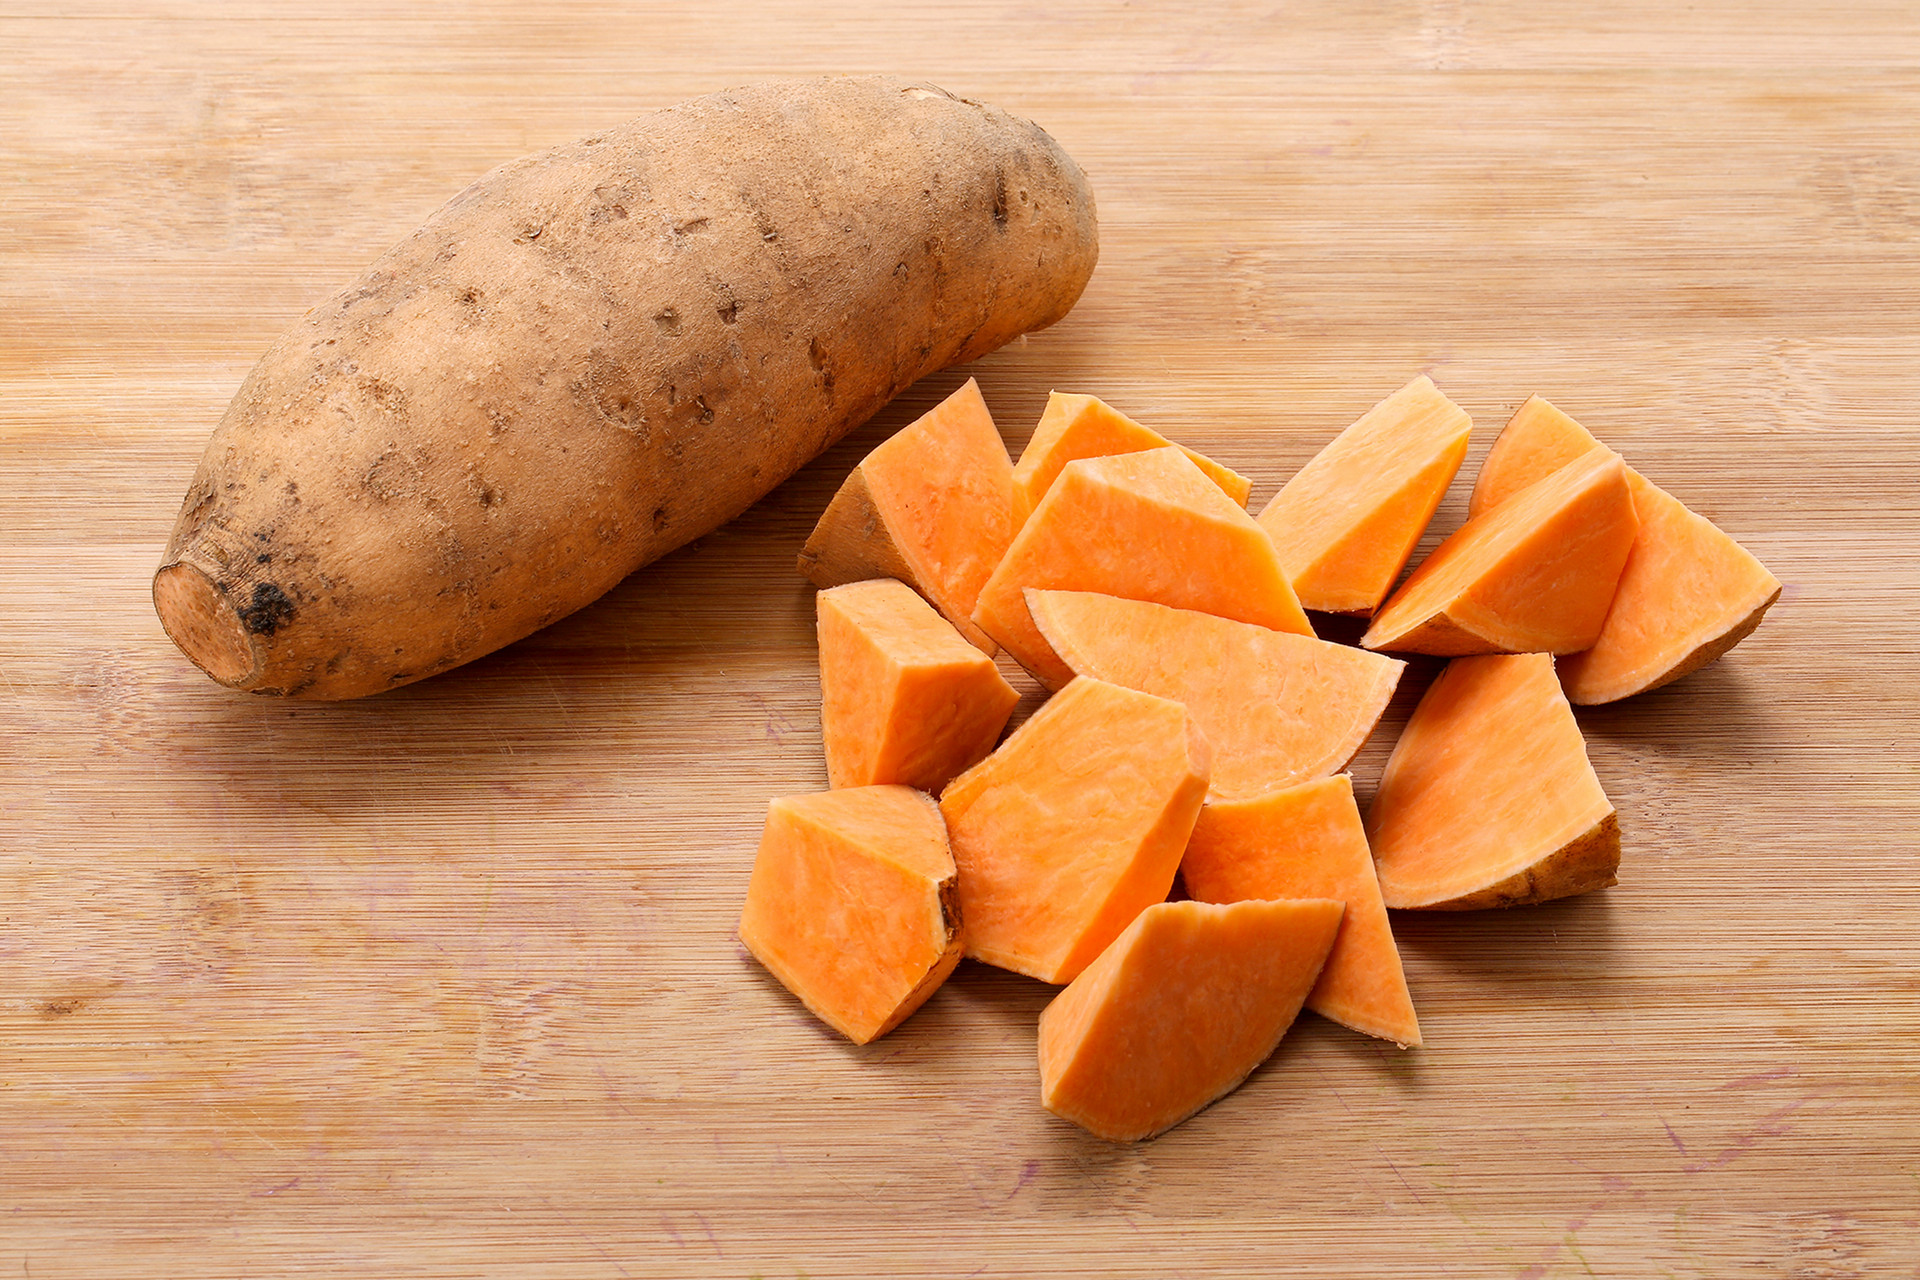 哺乳期红薯可以怎么吃好 红薯食谱推荐1